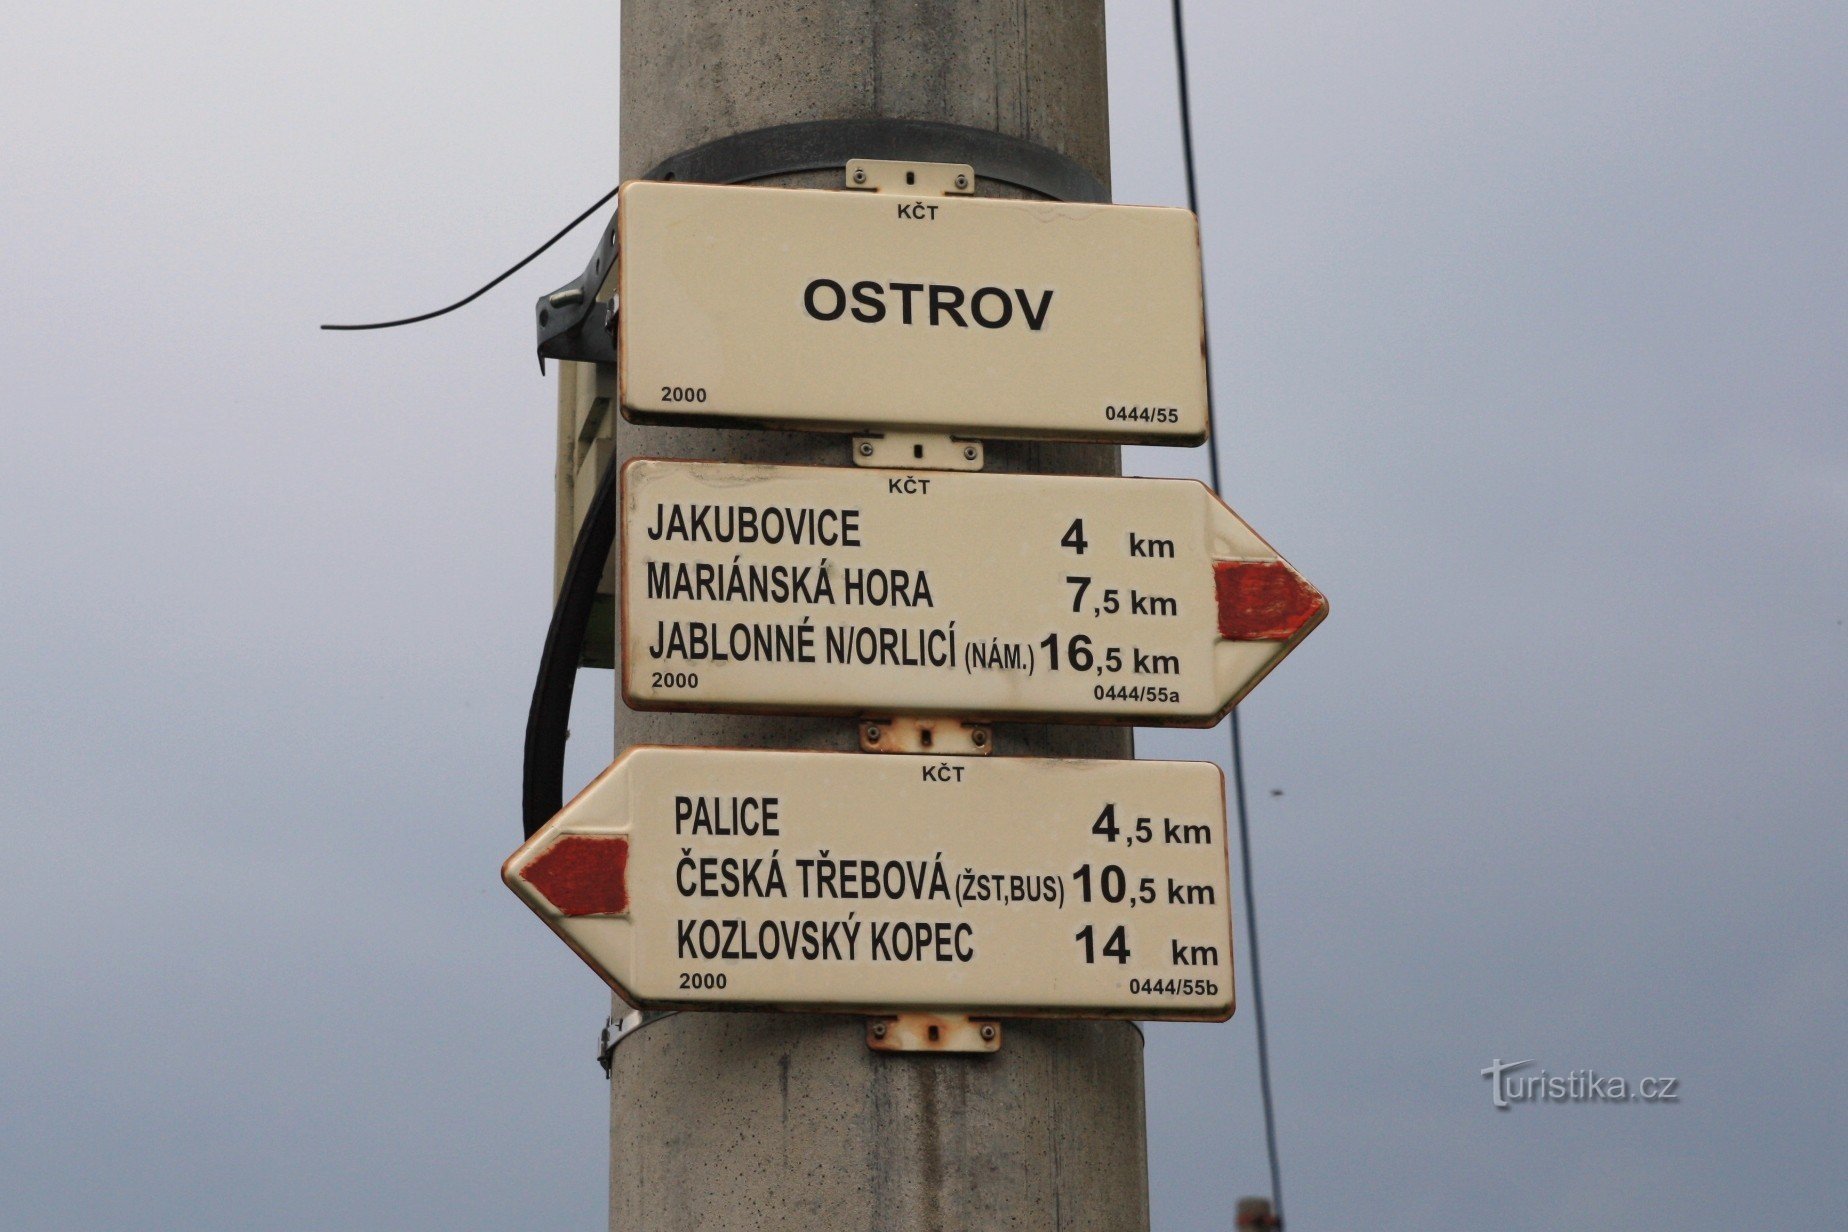 Τουριστικό σταυροδρόμι Ostrov